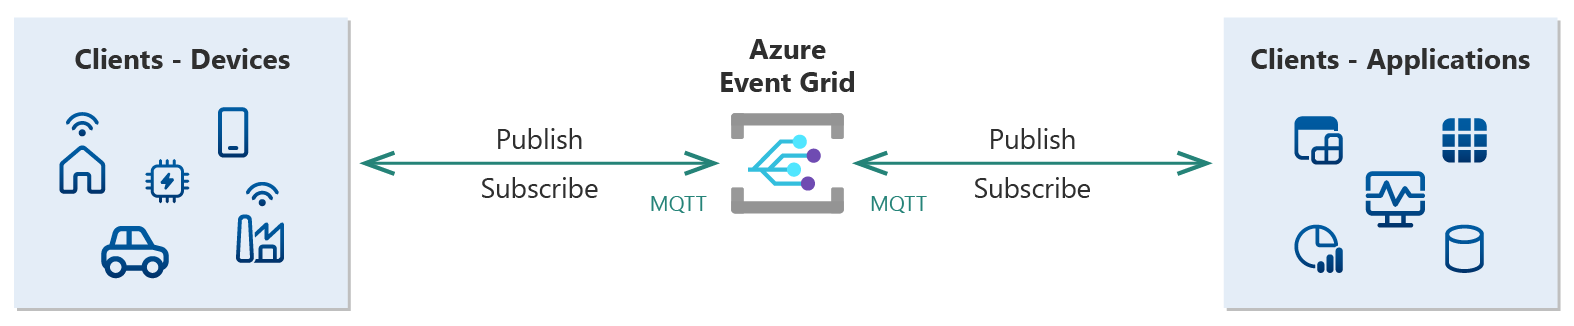 パブリッシャーおよびサブスクライバー クライアントとの双方向 MQTT 通信を示す Event Grid の概要図。